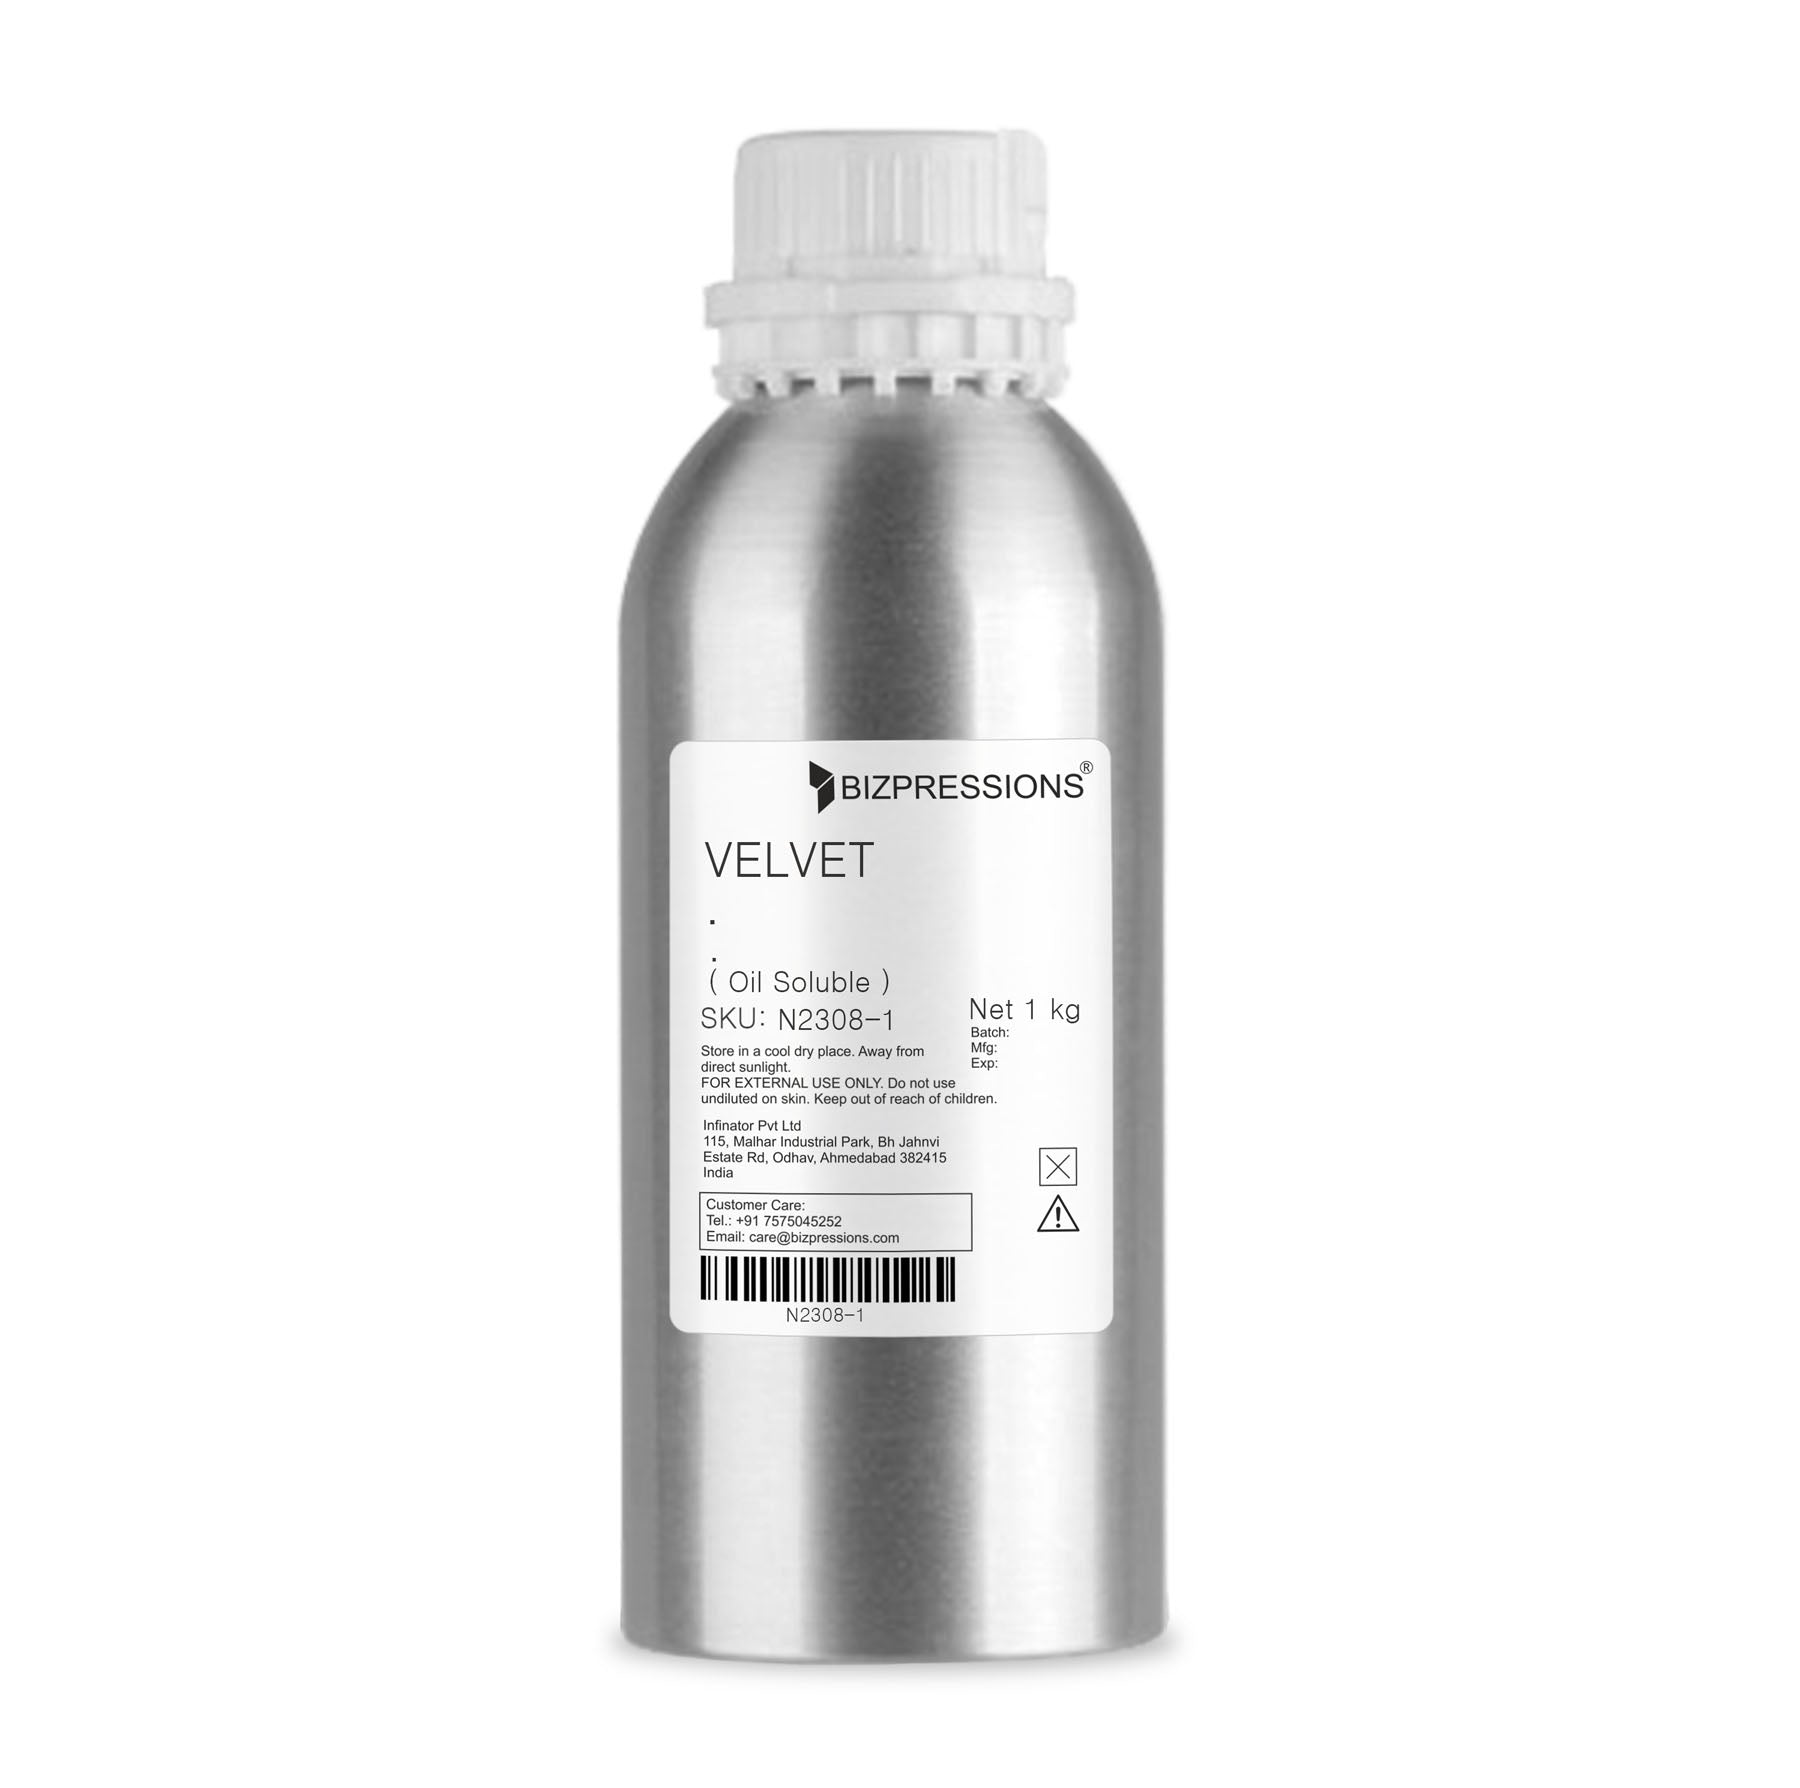 VELVET - Fragrance ( Oil Soluble ) - 1 kg